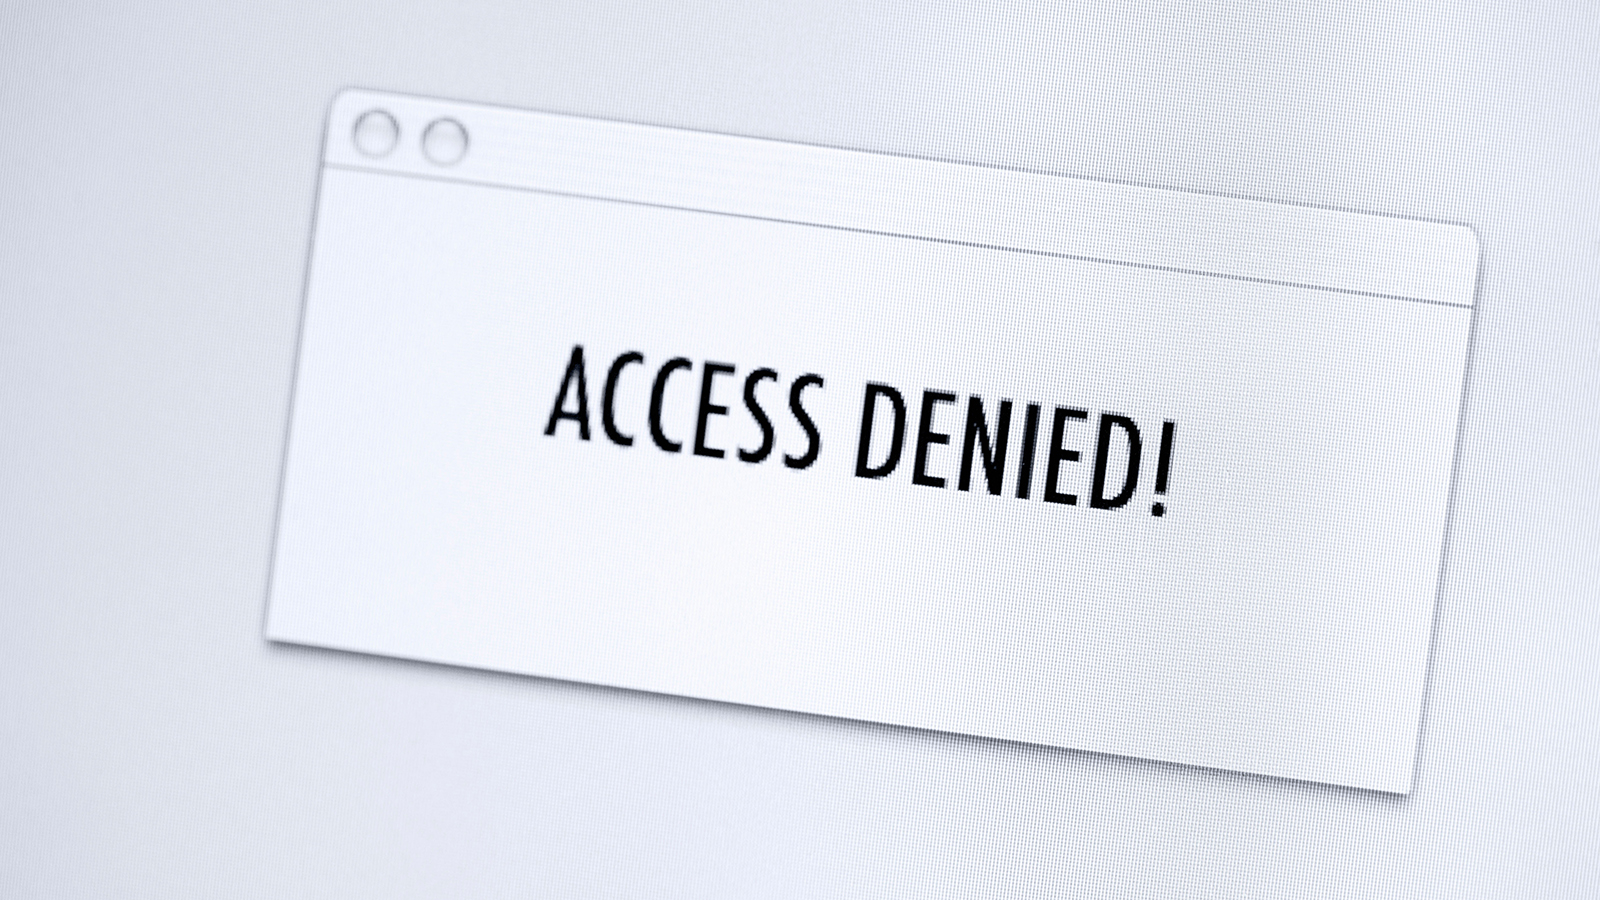 Deny access read. Access denied. Access denied картинки. Access is denied. Access denied Design.